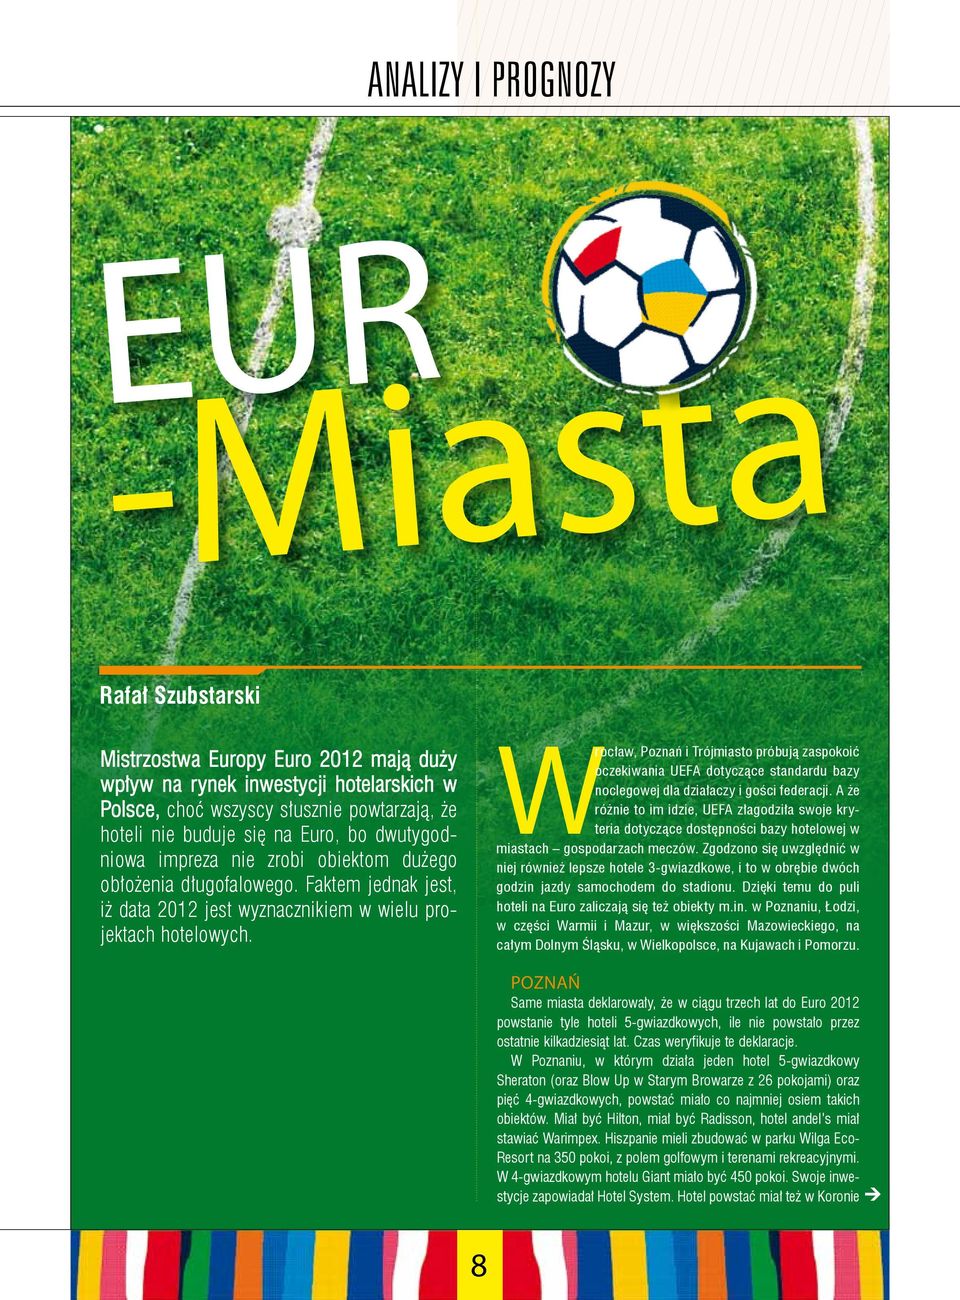 W rocław, Poznań i Trójmiasto próbują zaspokoić oczekiwania UEFA dotyczące standardu bazy noclegowej dla działaczy i gości federacji.